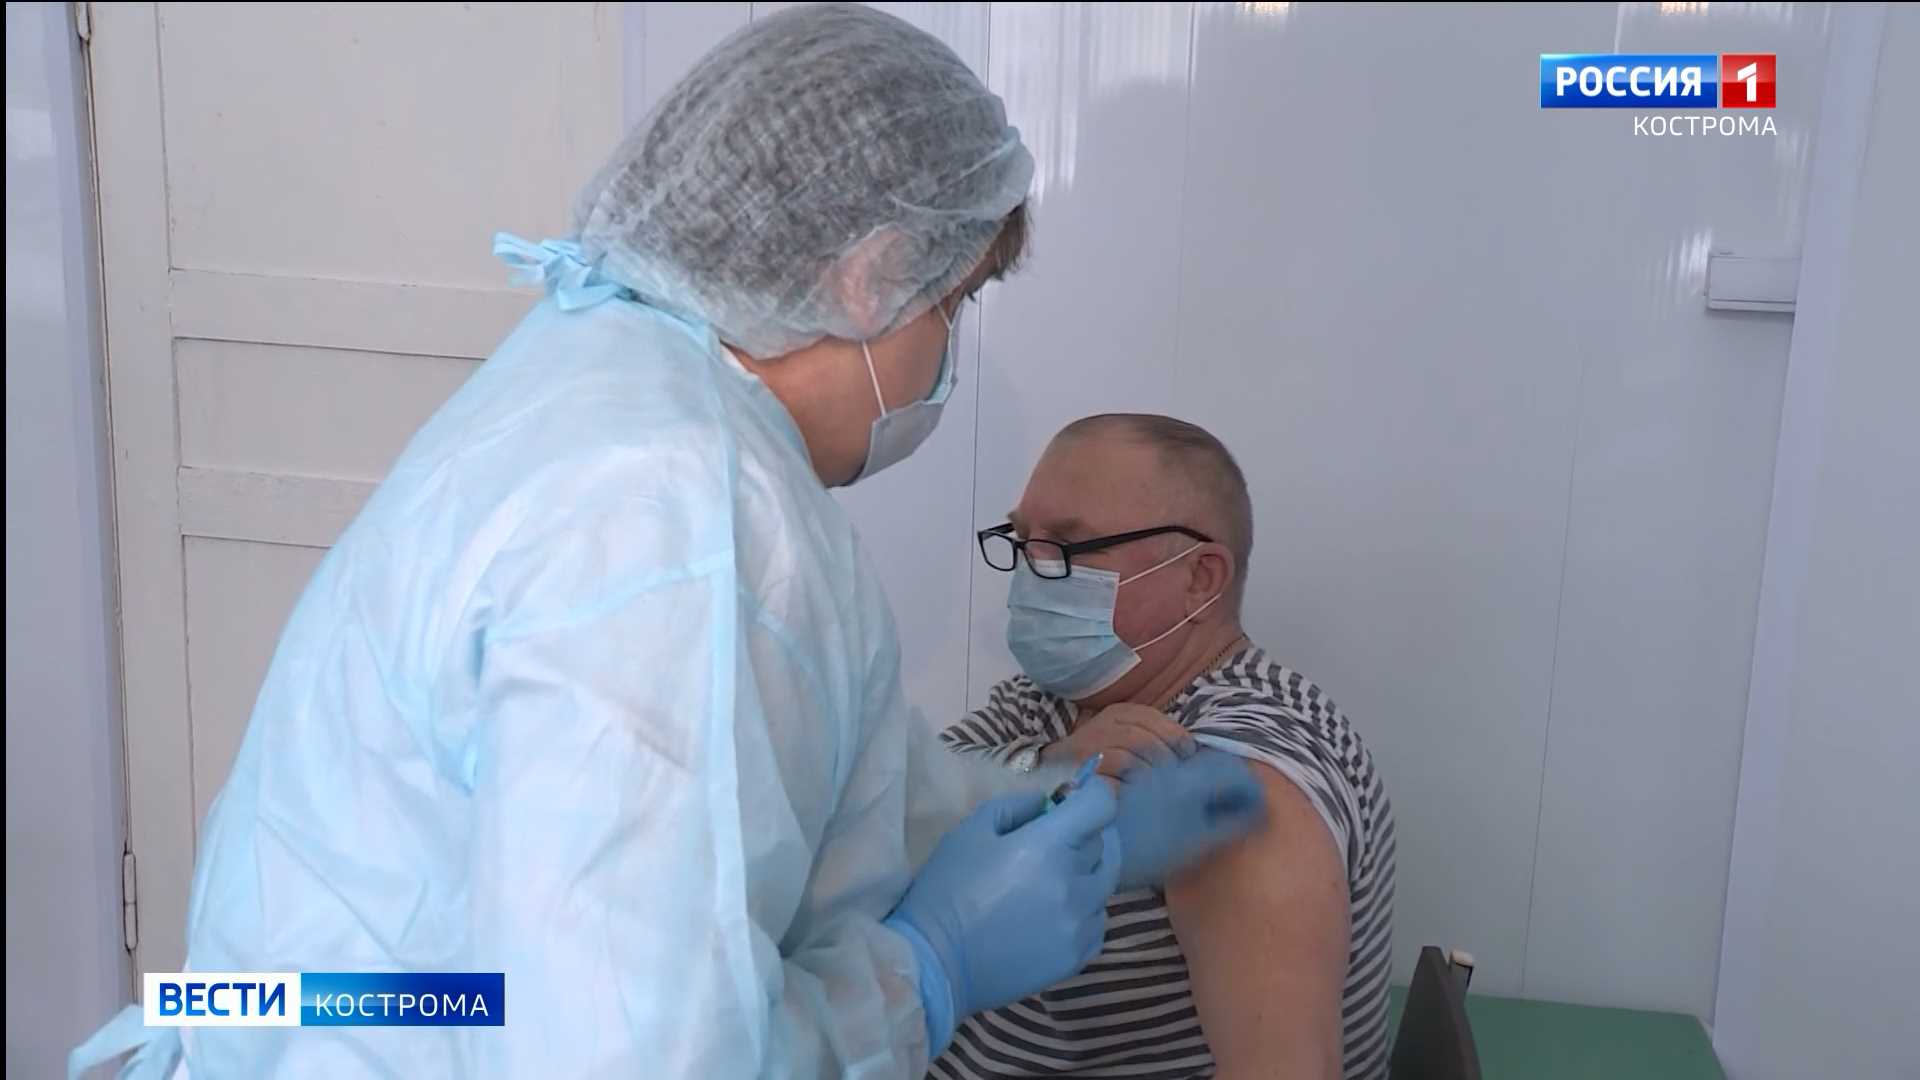 Большая партия вакцины от коронавируса доставлена в Кострому